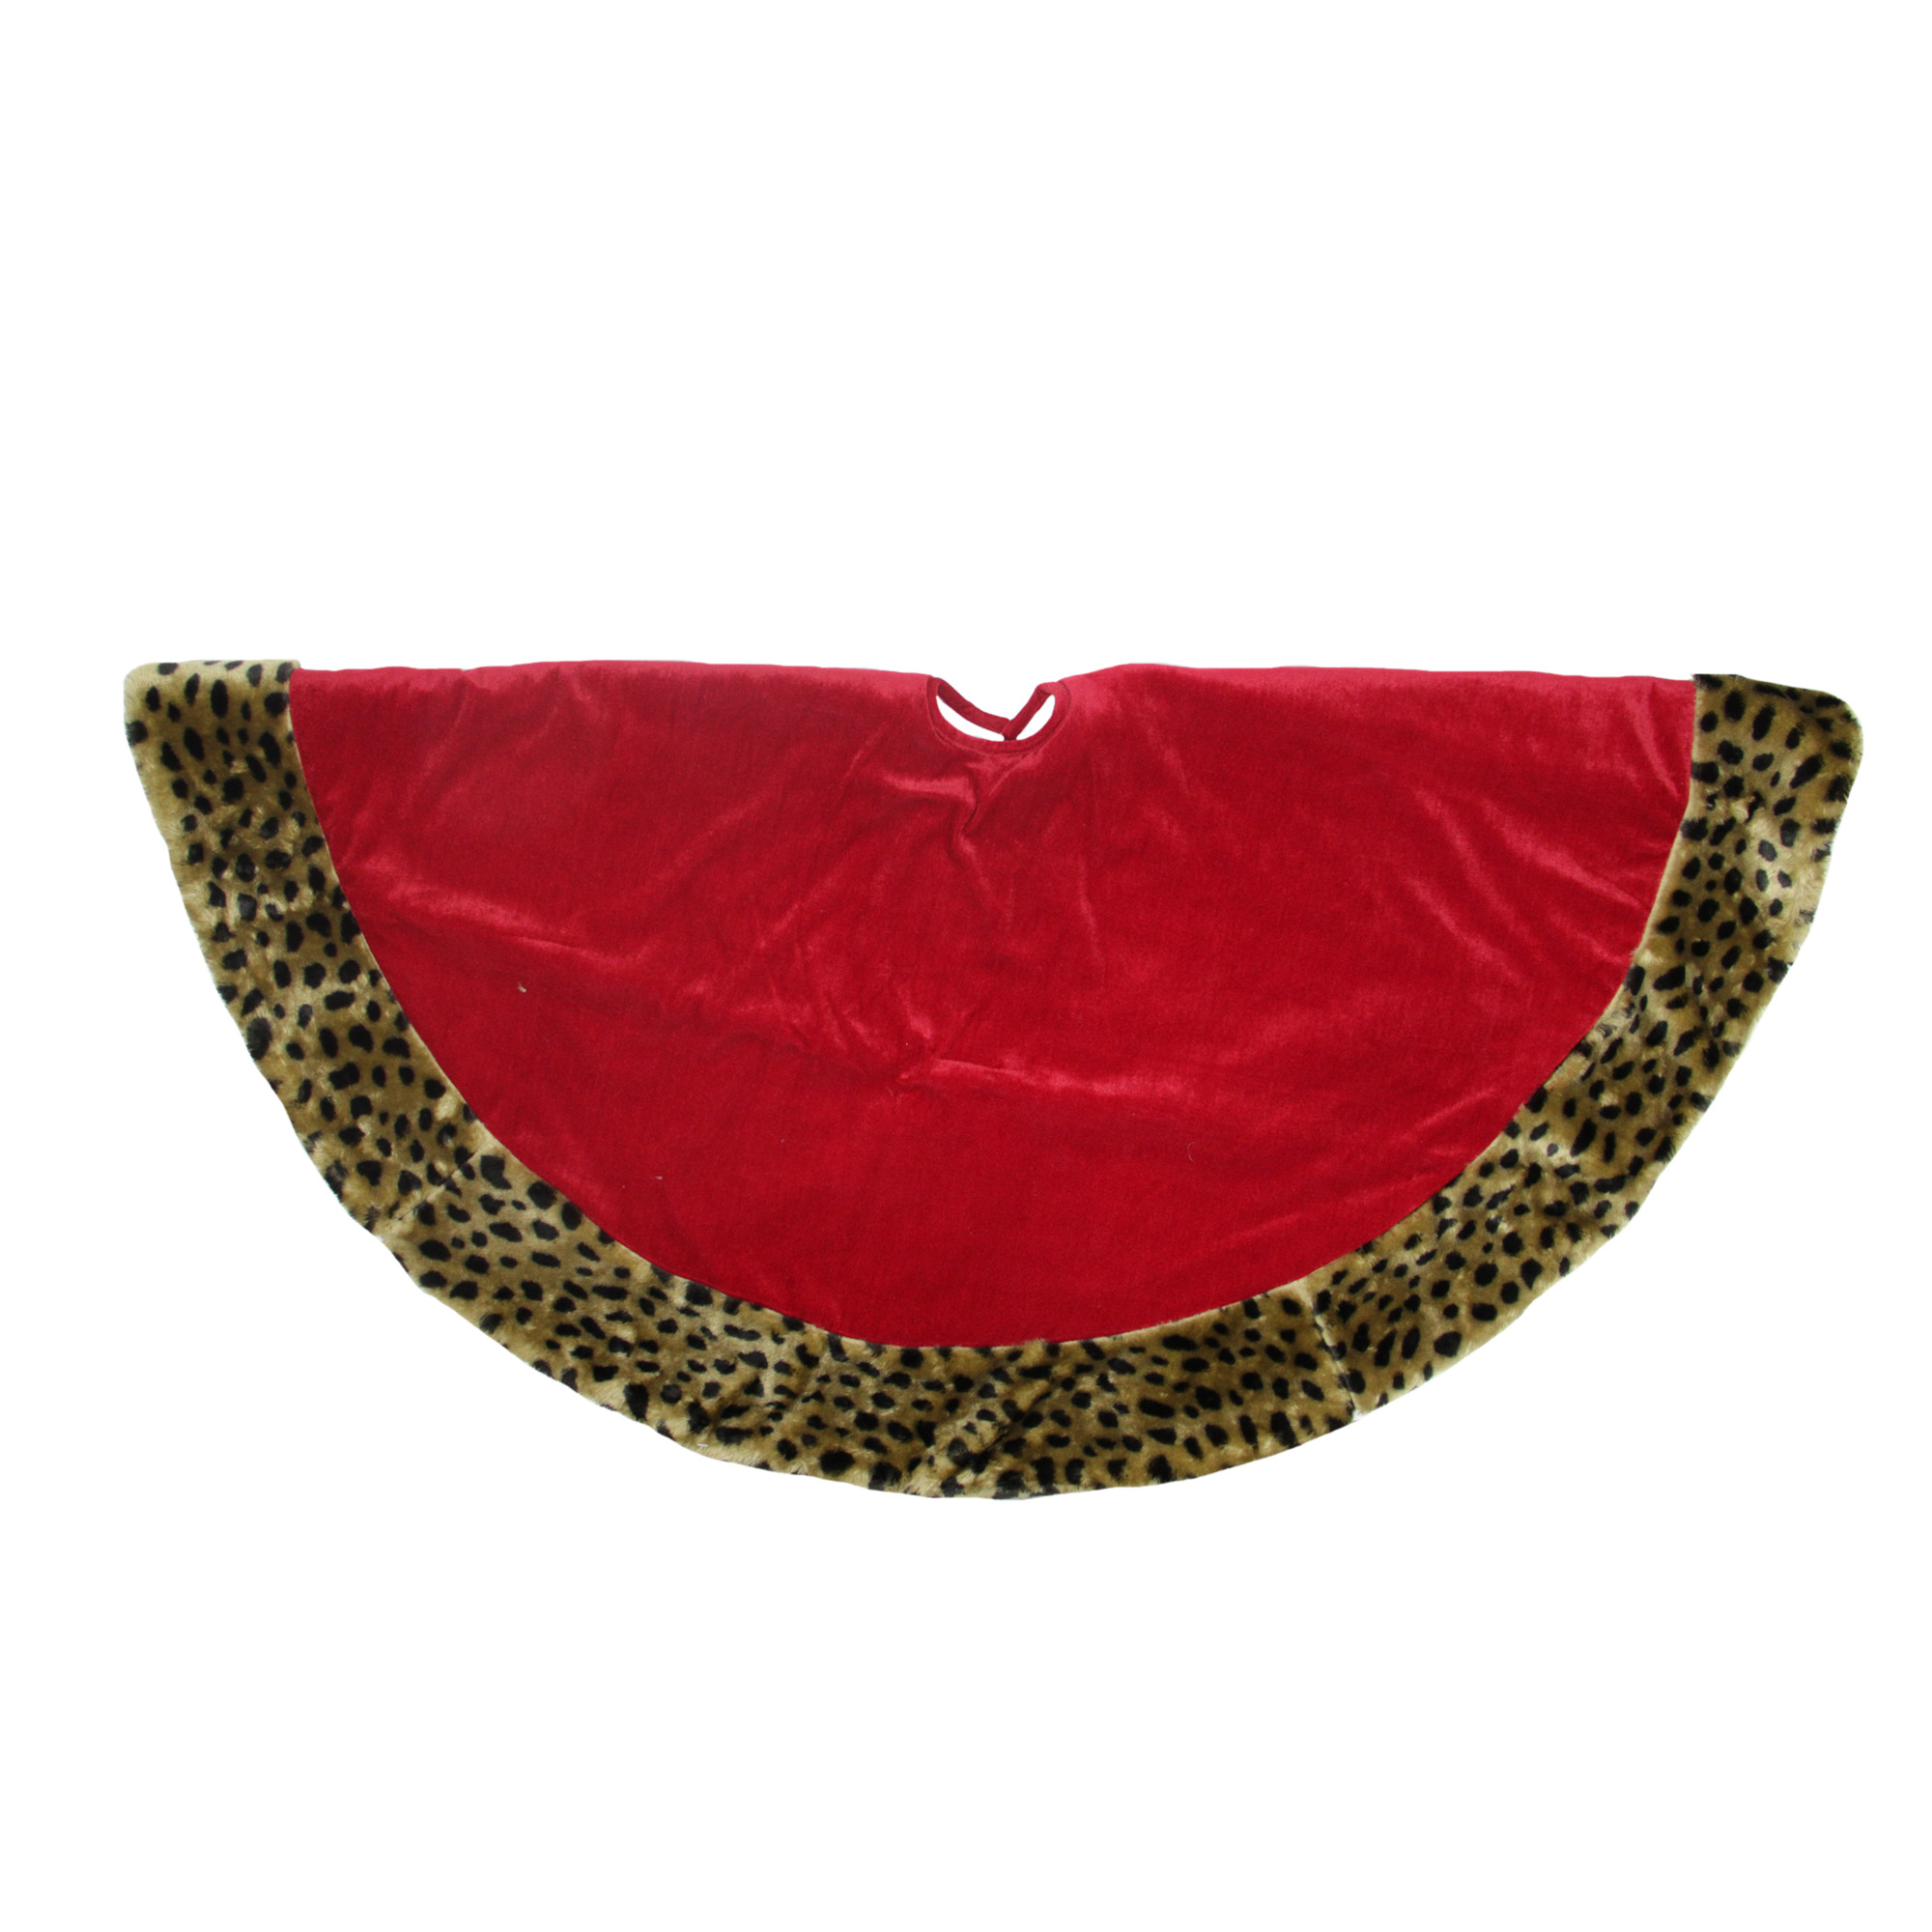 Northlight 48" Red Velveteen with Cheetah Print Border Christmas Tree Skirt